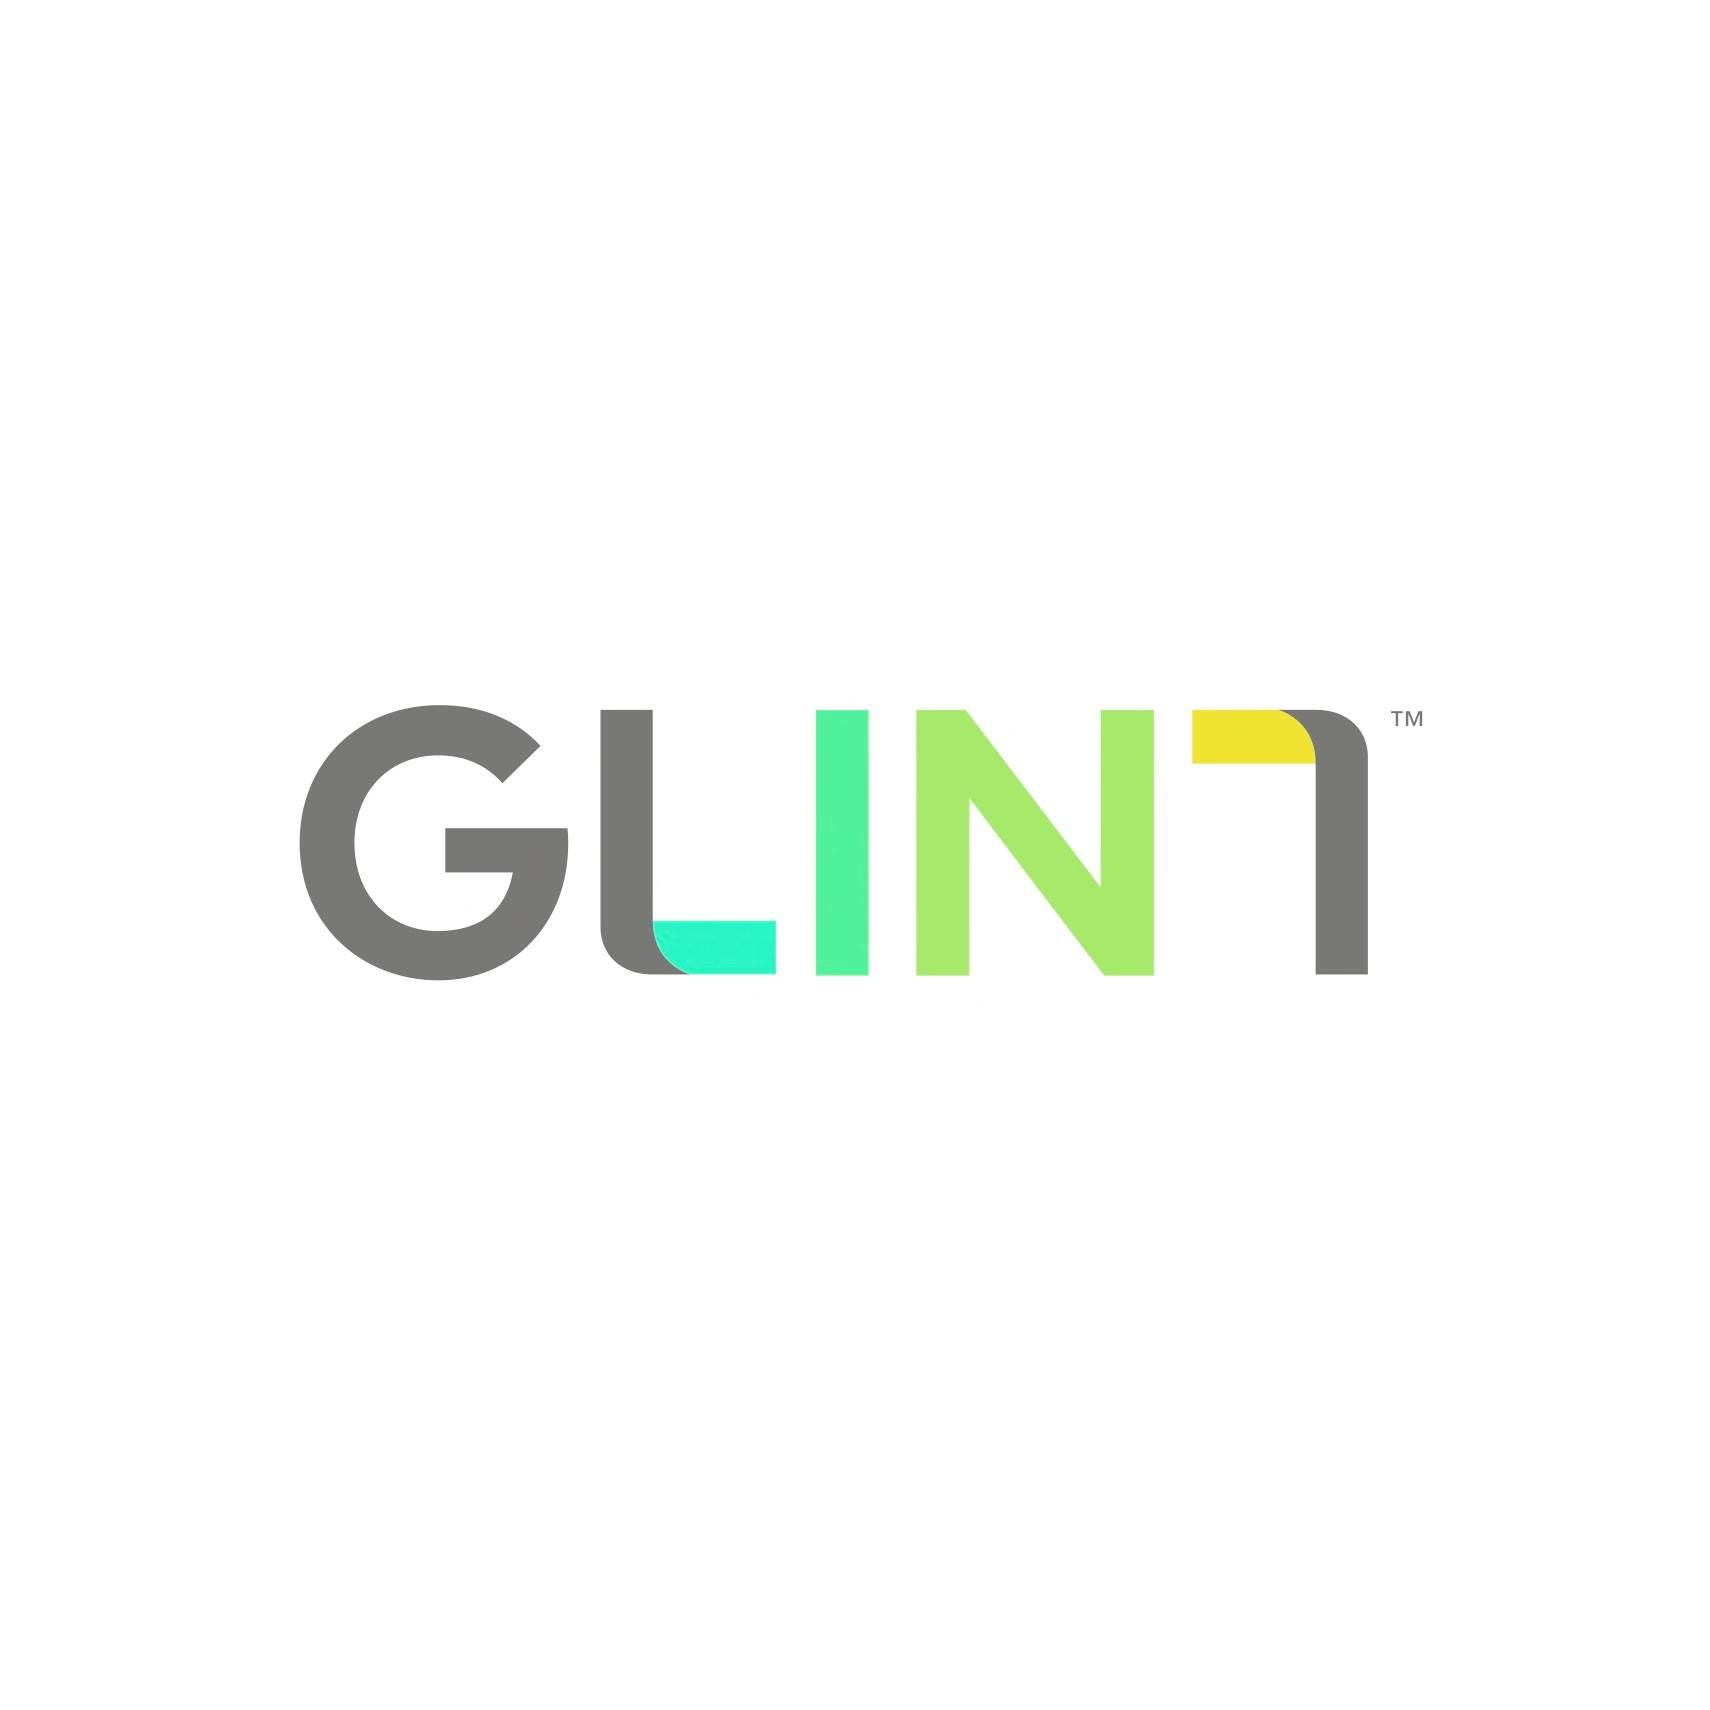 Glint - Employee Engagement Software